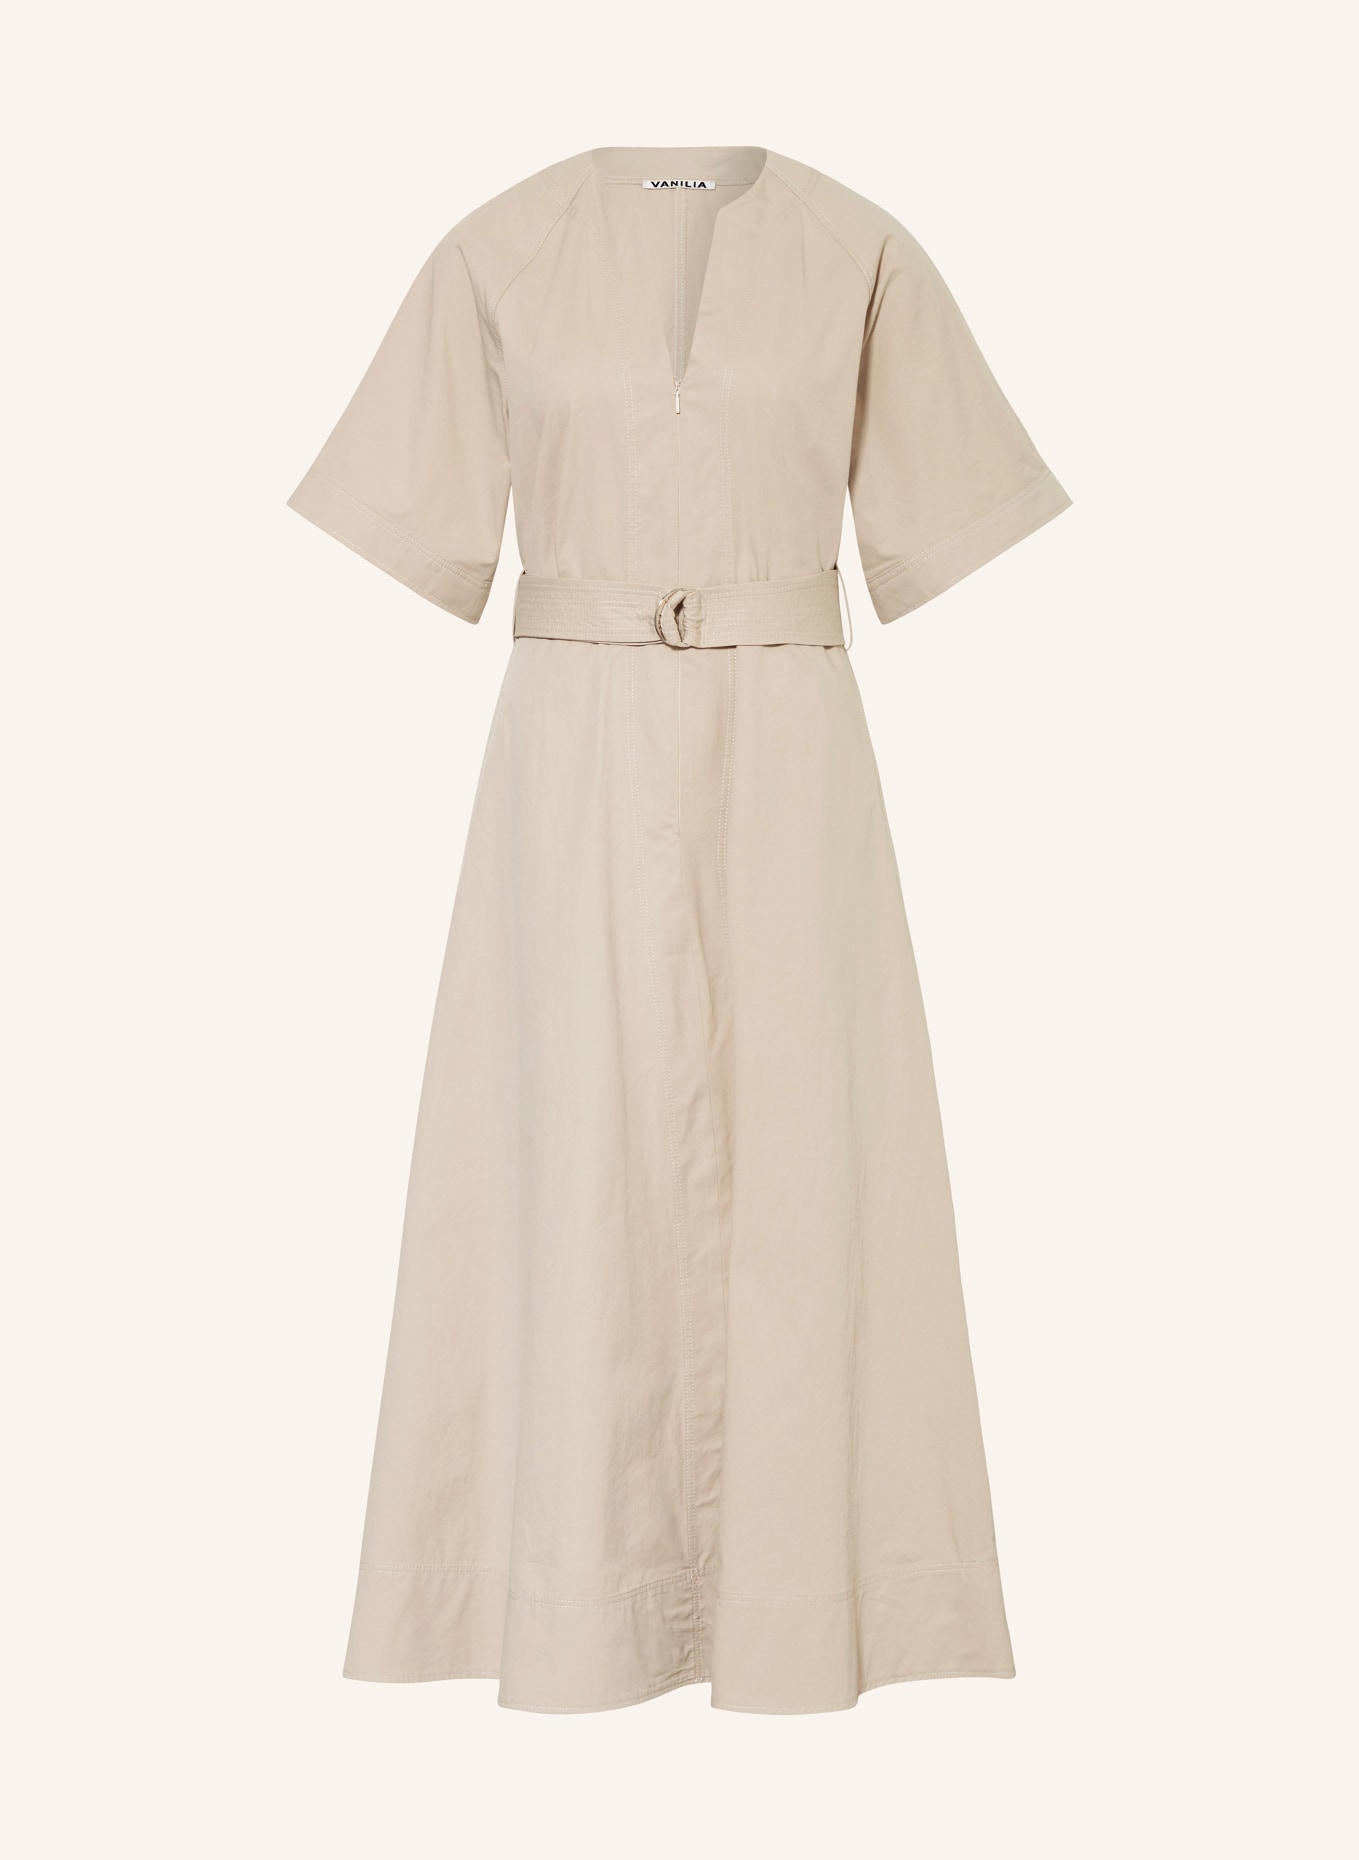 VANILIA Kleid, Farbe: BEIGE (Bild 1)